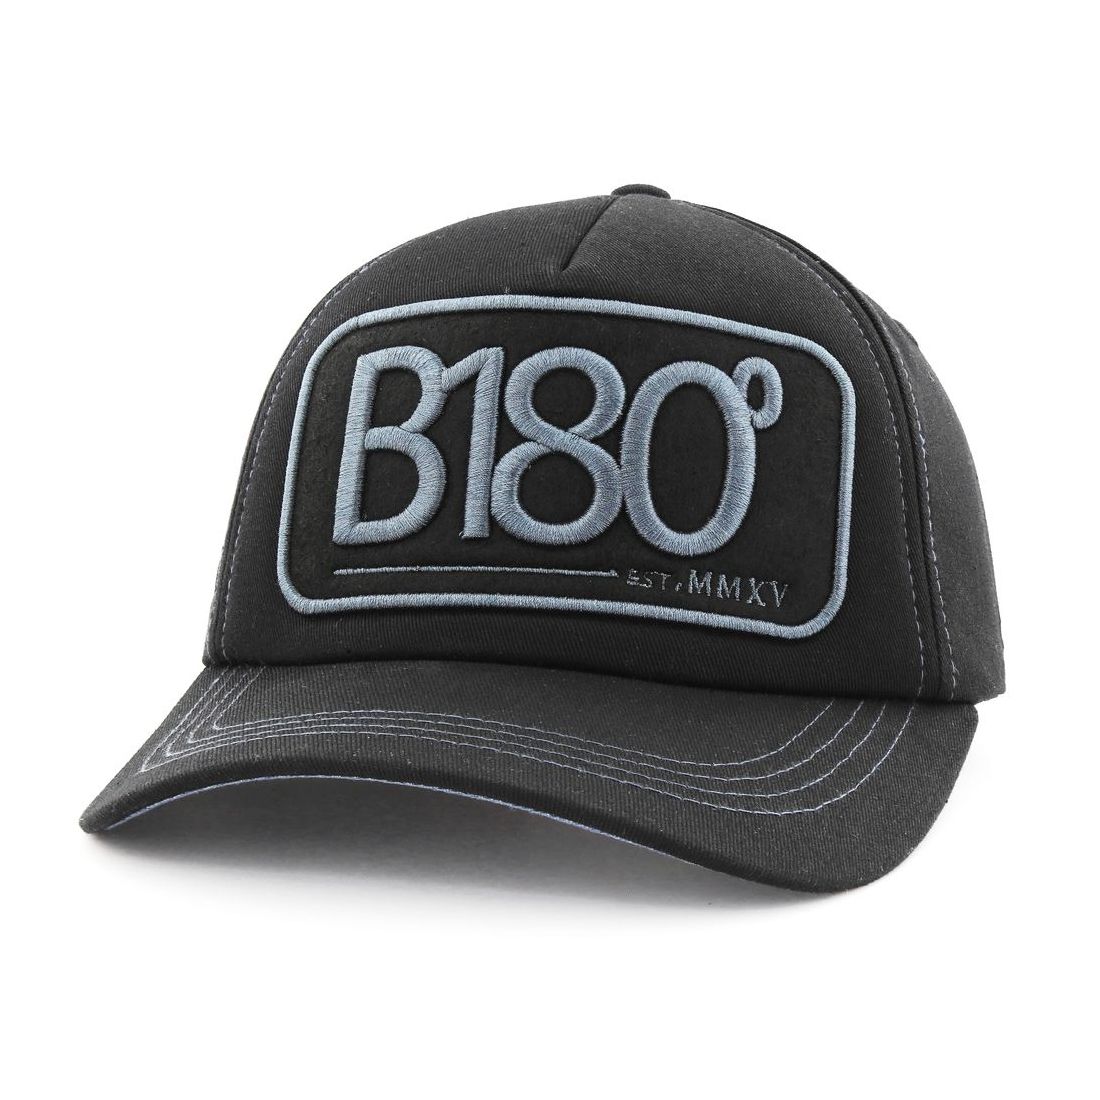 B180 B180 Sign12 Unisex Cap Black